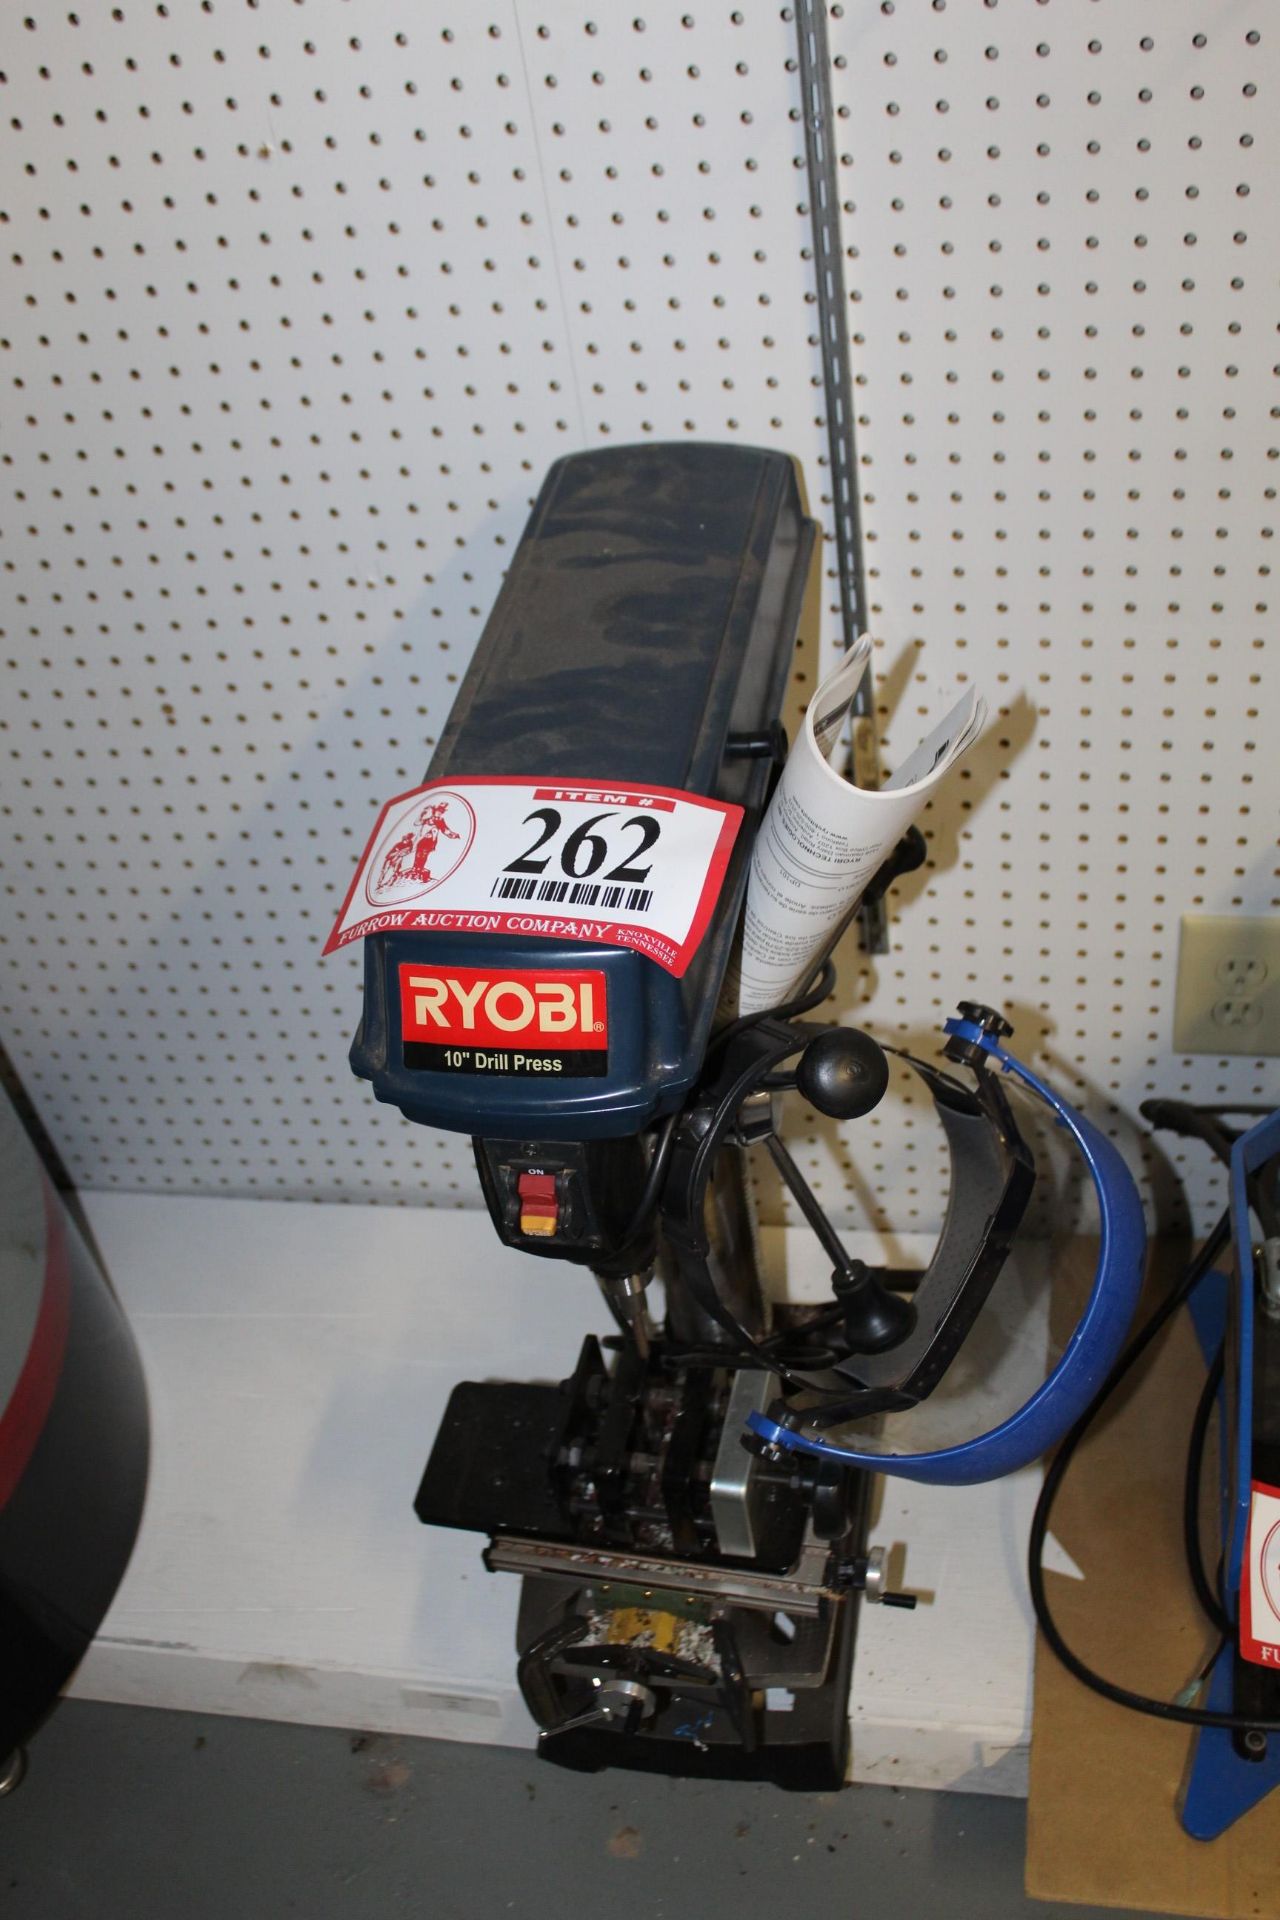 Ryobi 10" Drill Press